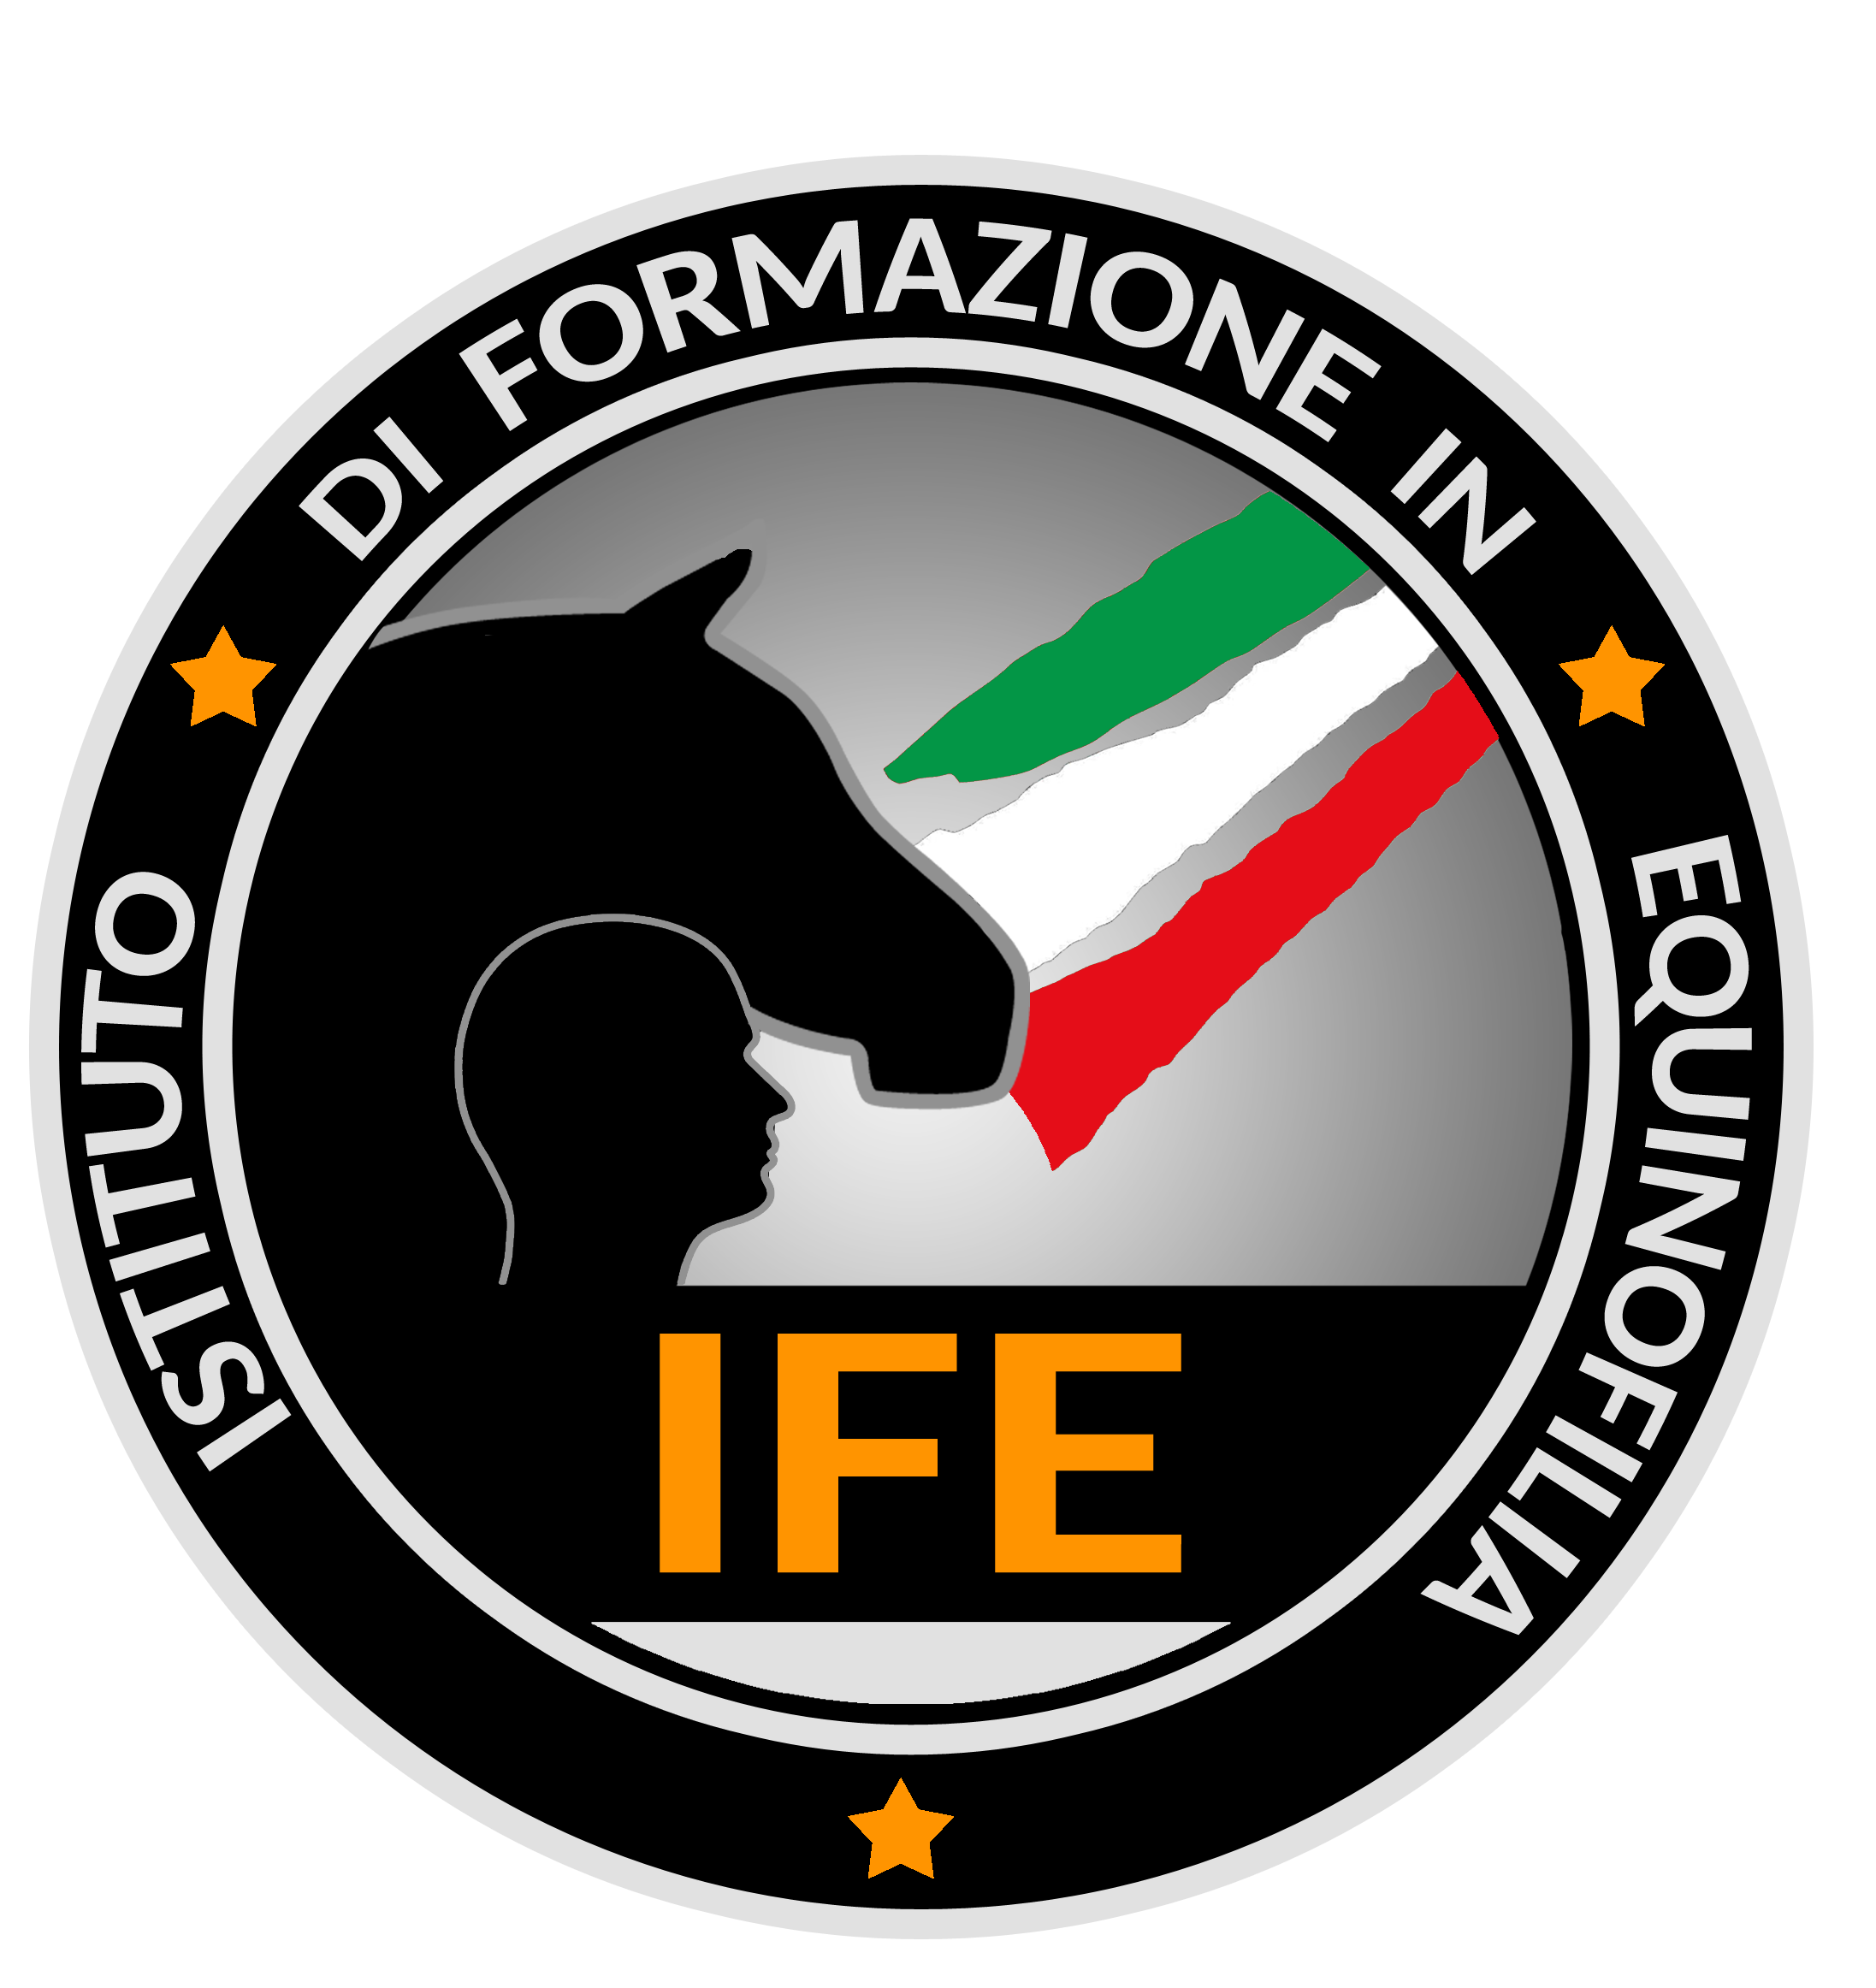 IFE – Istituto di Formazione Equinofila